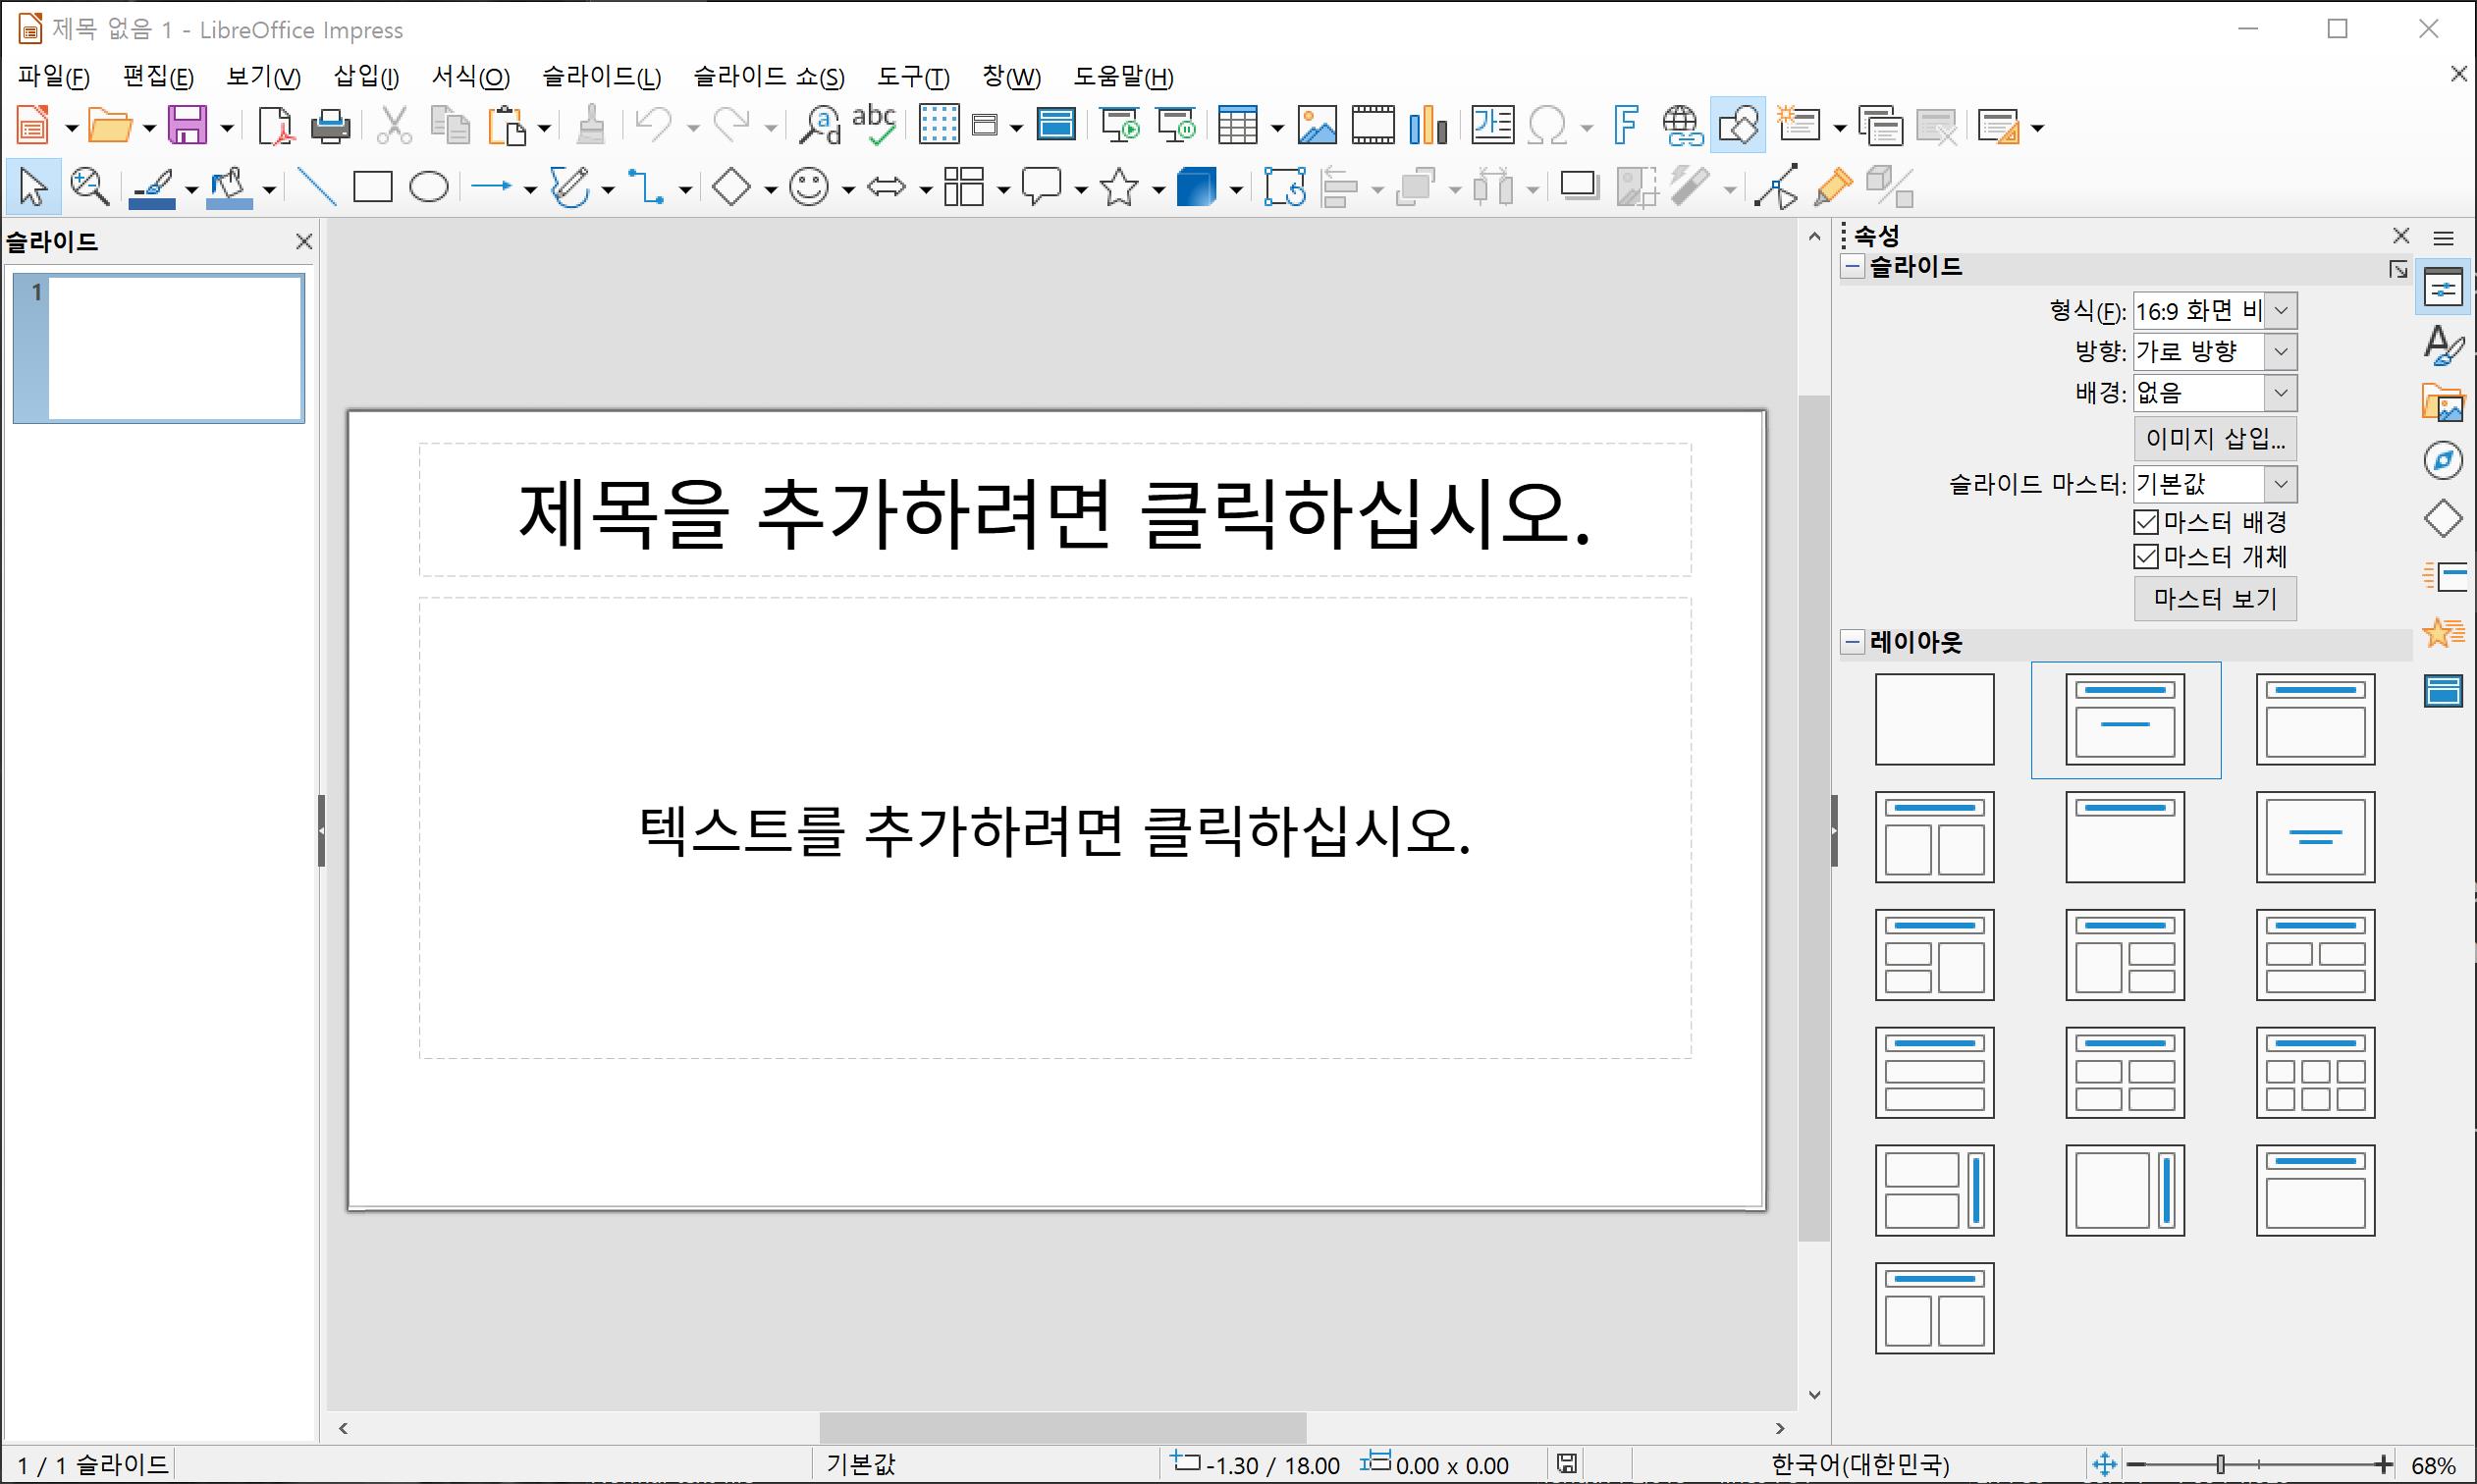 리브레오피스(LibreOffice) 프레젠테이션 도구 임프레스(Impress)